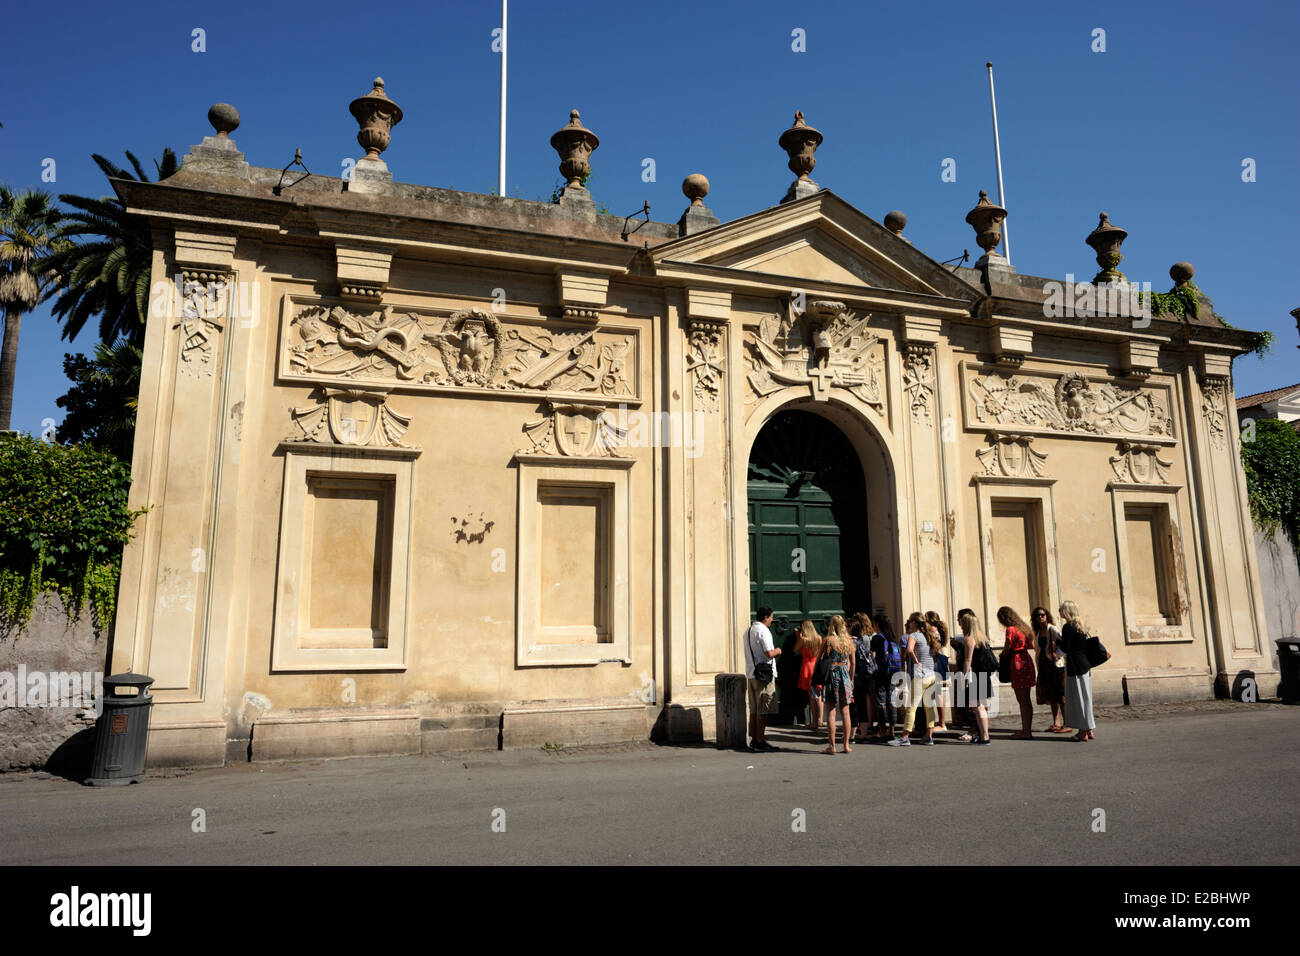 Italia, Roma Aventino, Piazza dei Cavalieri di Malta, el priorato de los caballeros de Malta. Foto de stock